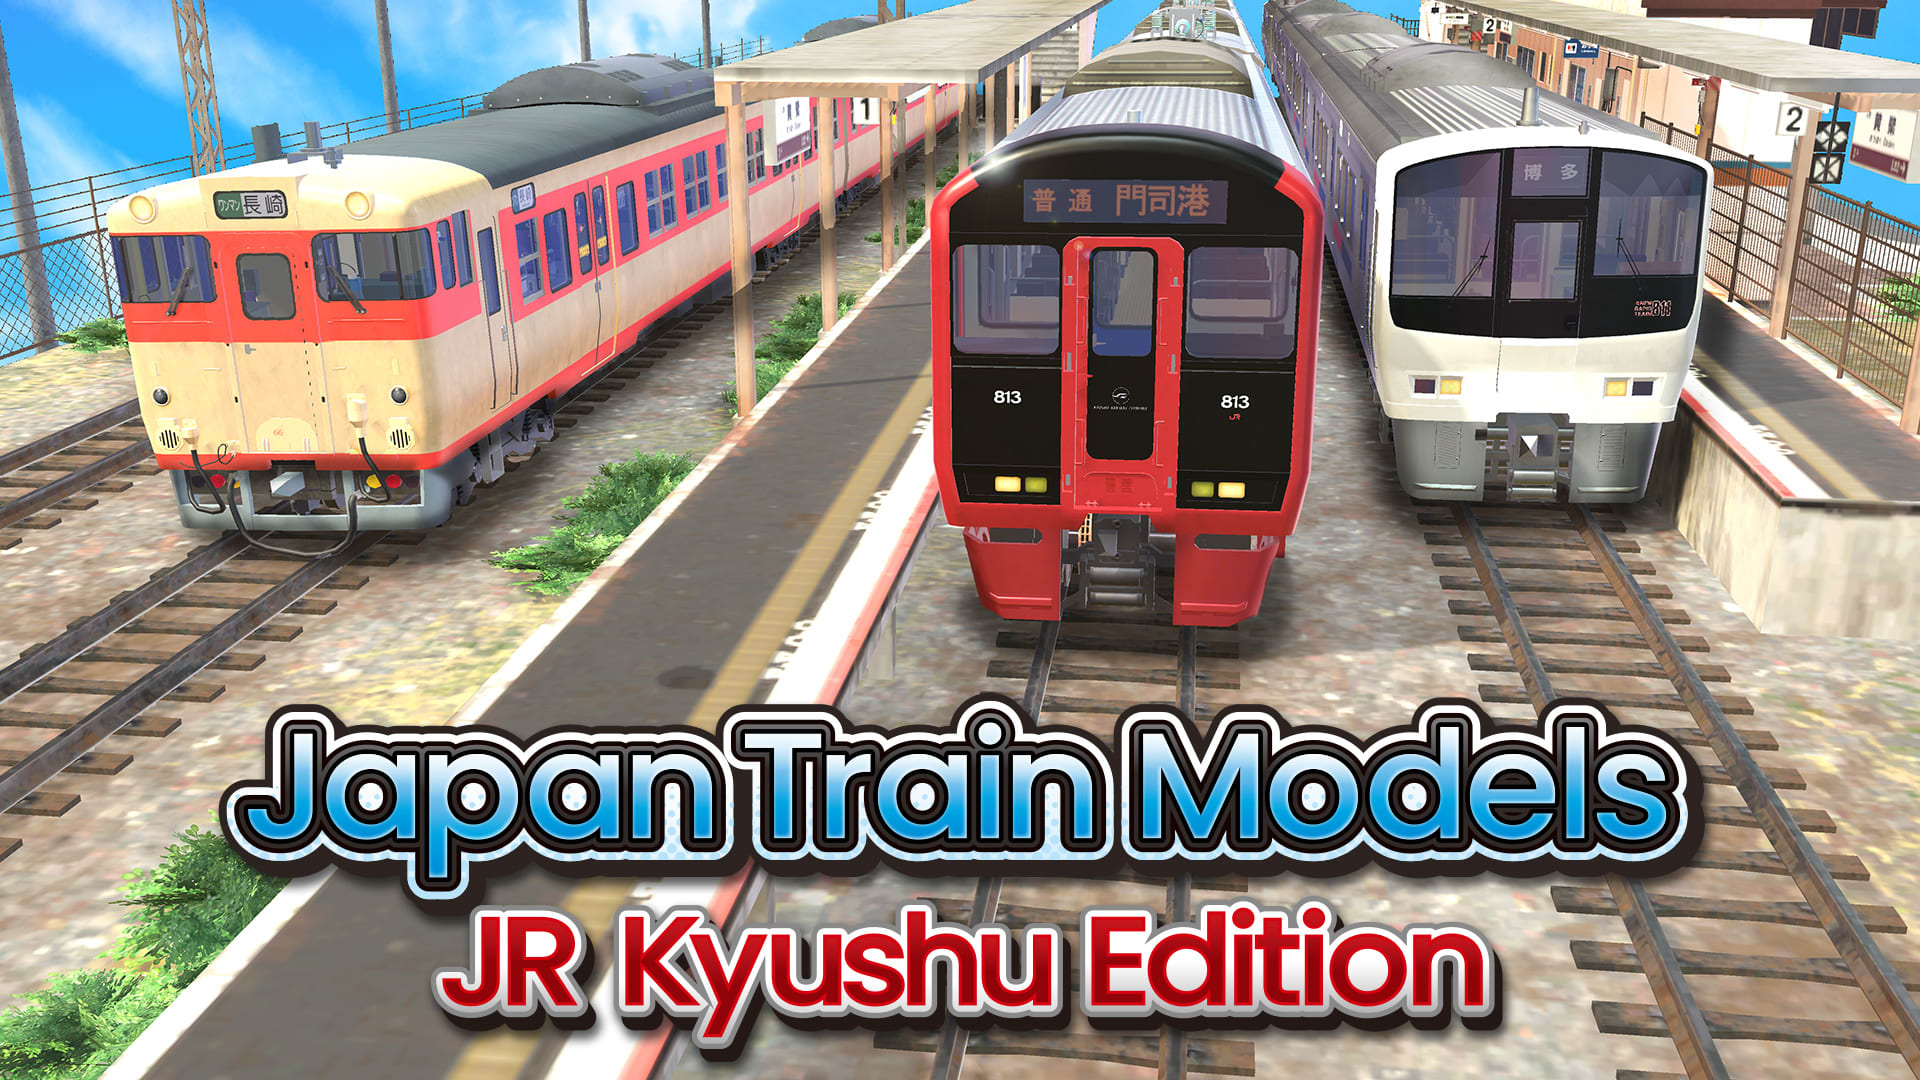 Japan Train Models - JR Kyushu Edition 1